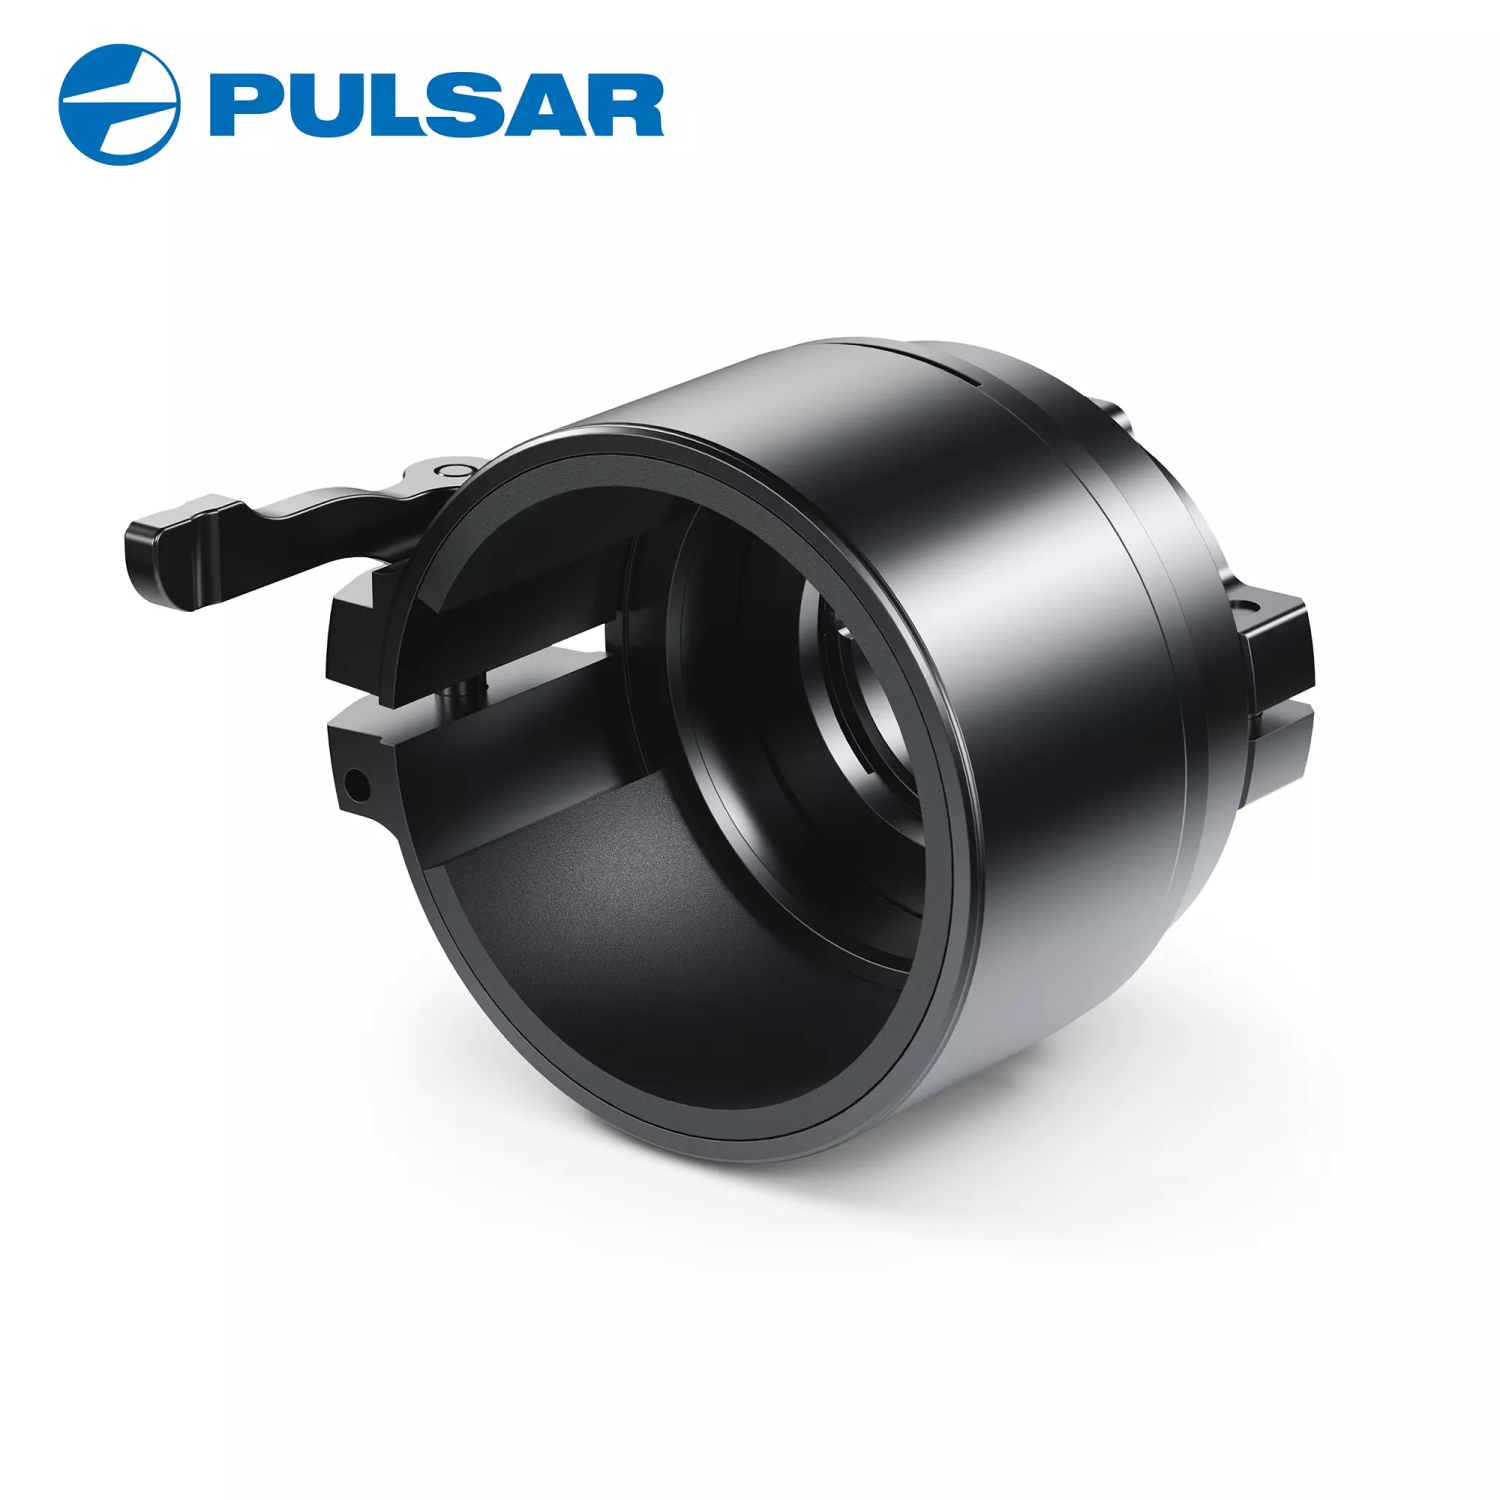 Pulsar PSP-42 Adapter Ring